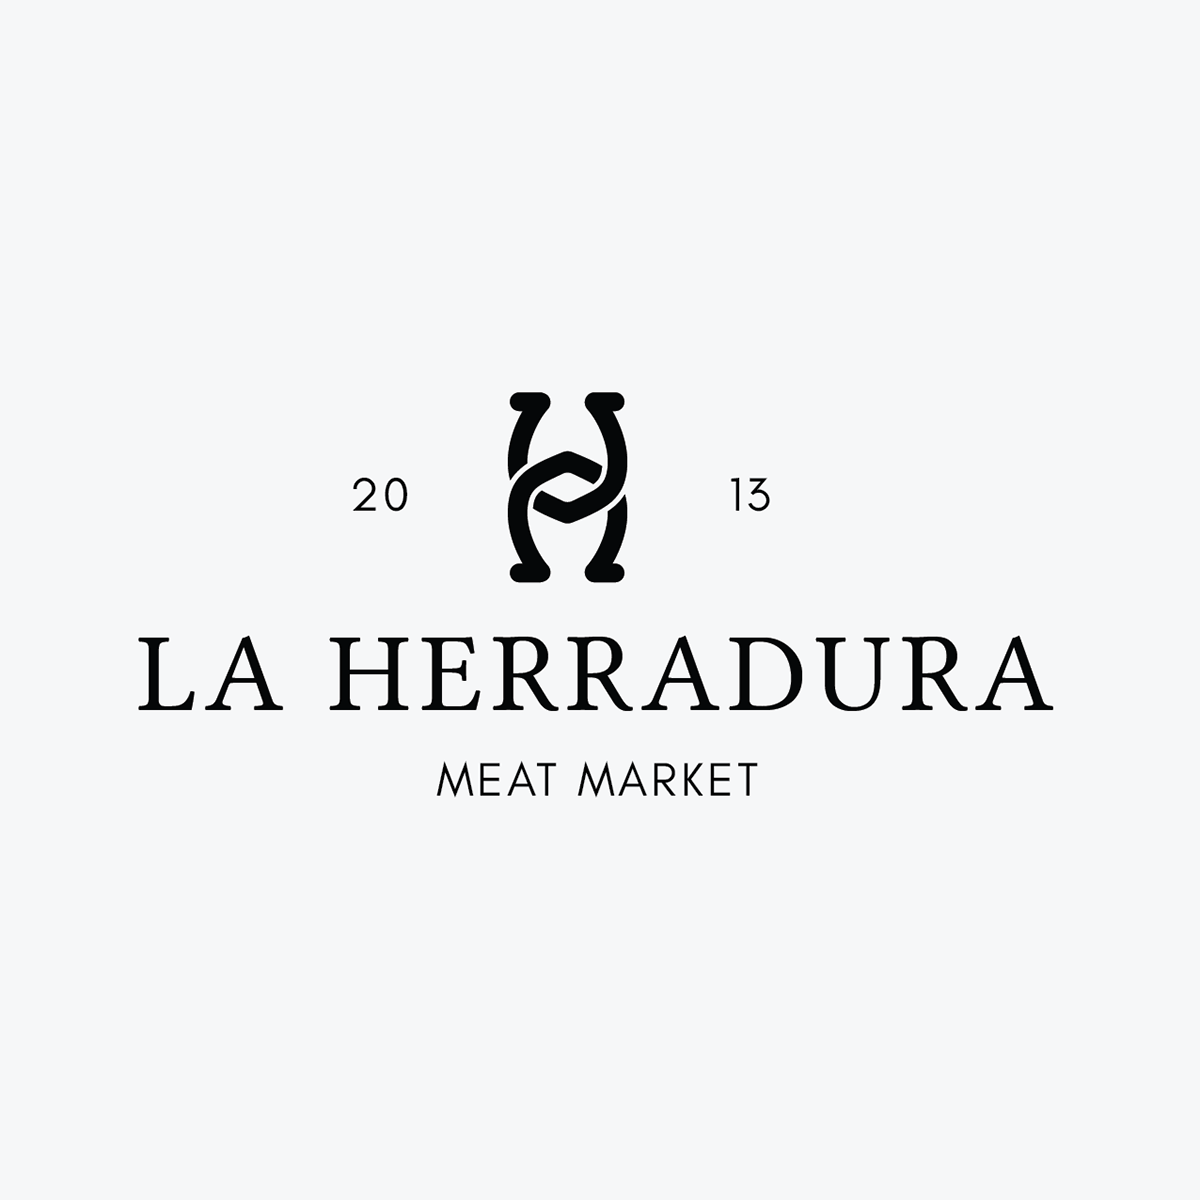 Herradura Logo - La Herradura Logo Design